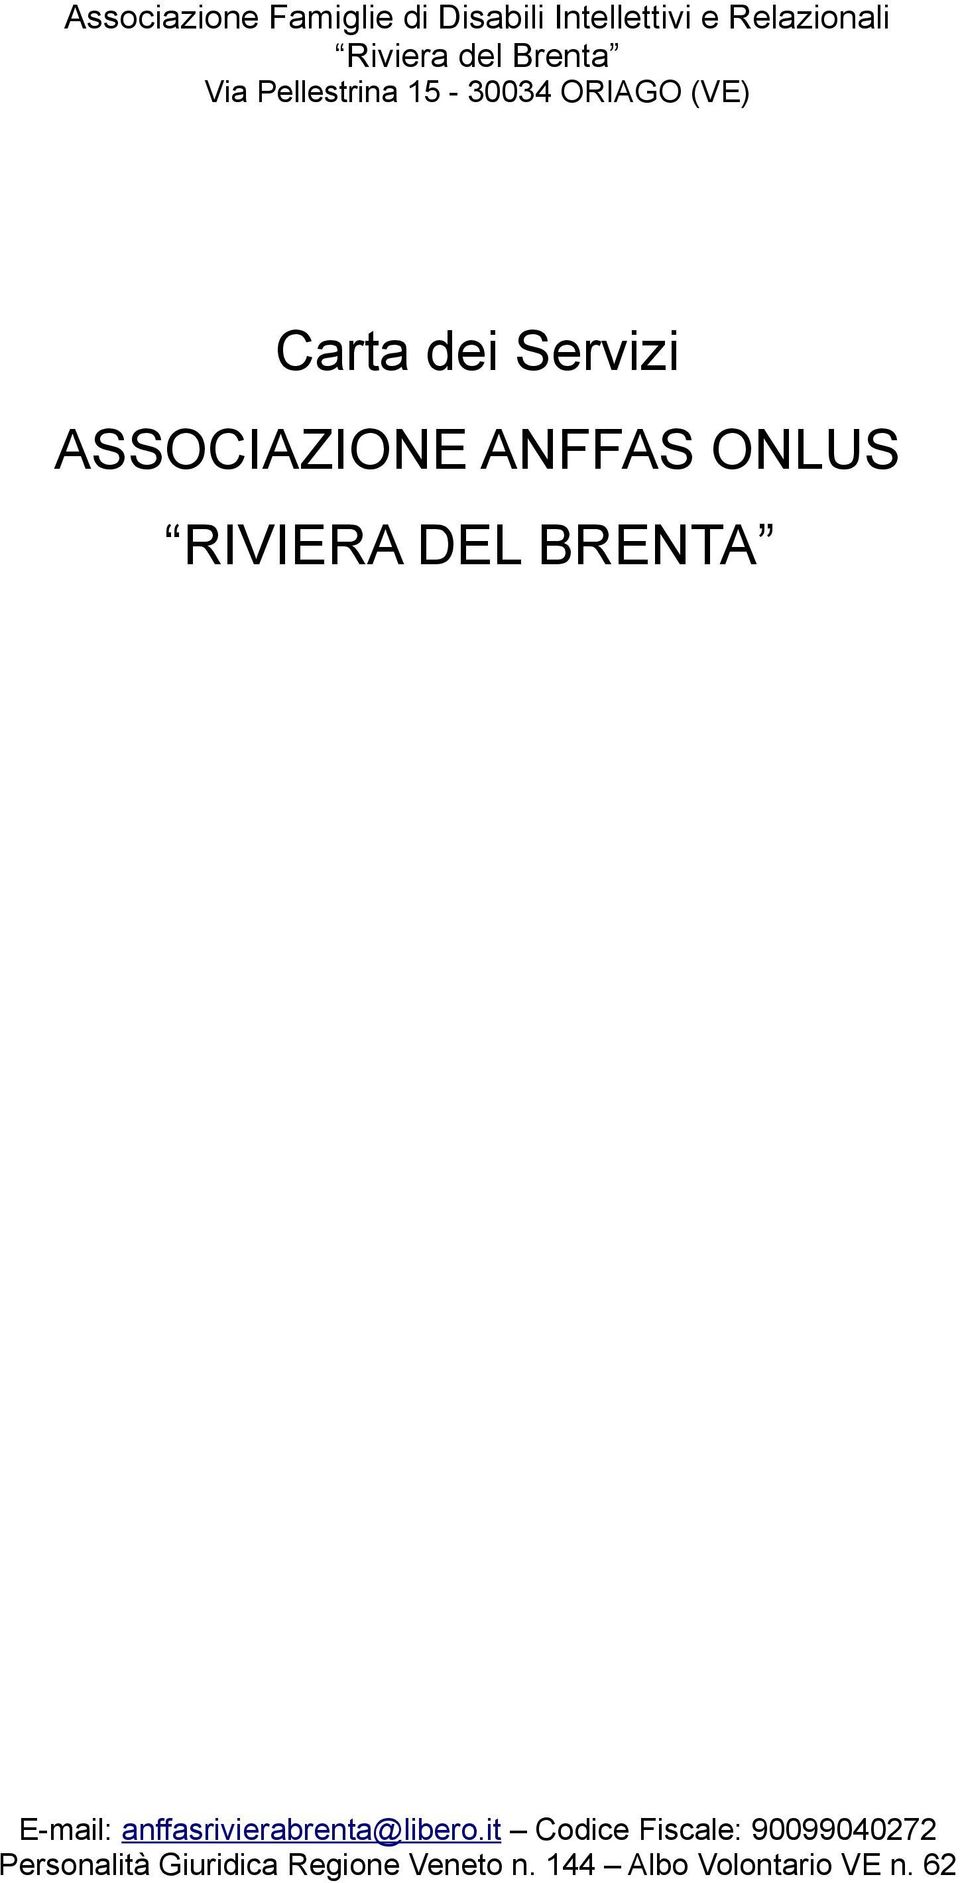 ANFFAS ONLUS RIVIERA DEL BRENTA E-mail: anffasrivierabrenta@libero.